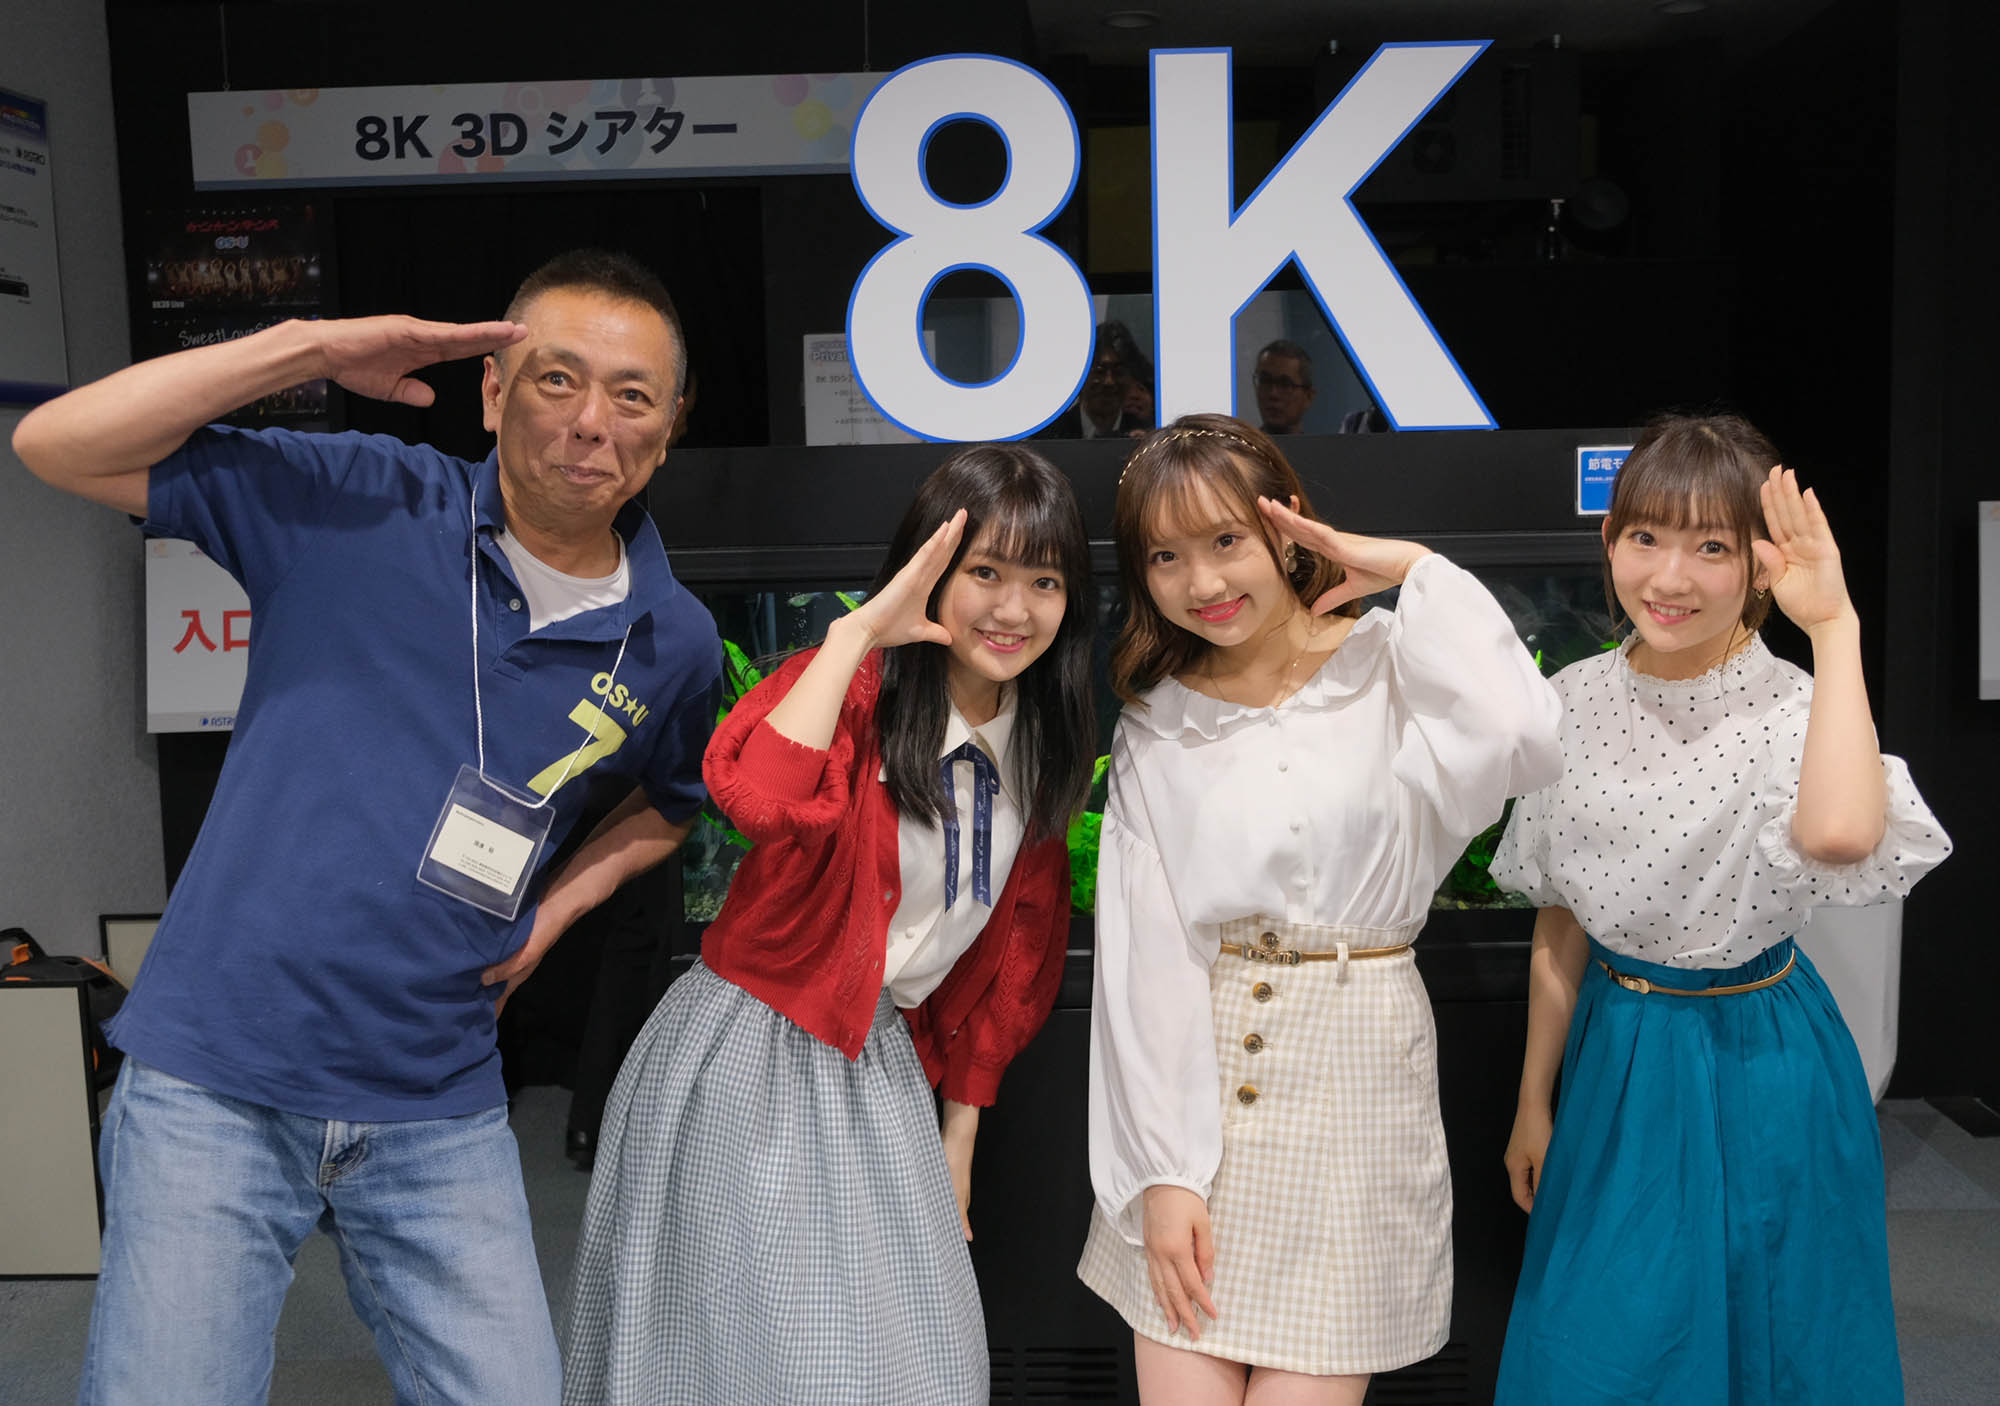 名古屋のアイドルグループos Uがアストロデザインのプライベートショーに訪問 自分たちが撮影されたライブを8k 3dで視聴してみた ビデオsalon